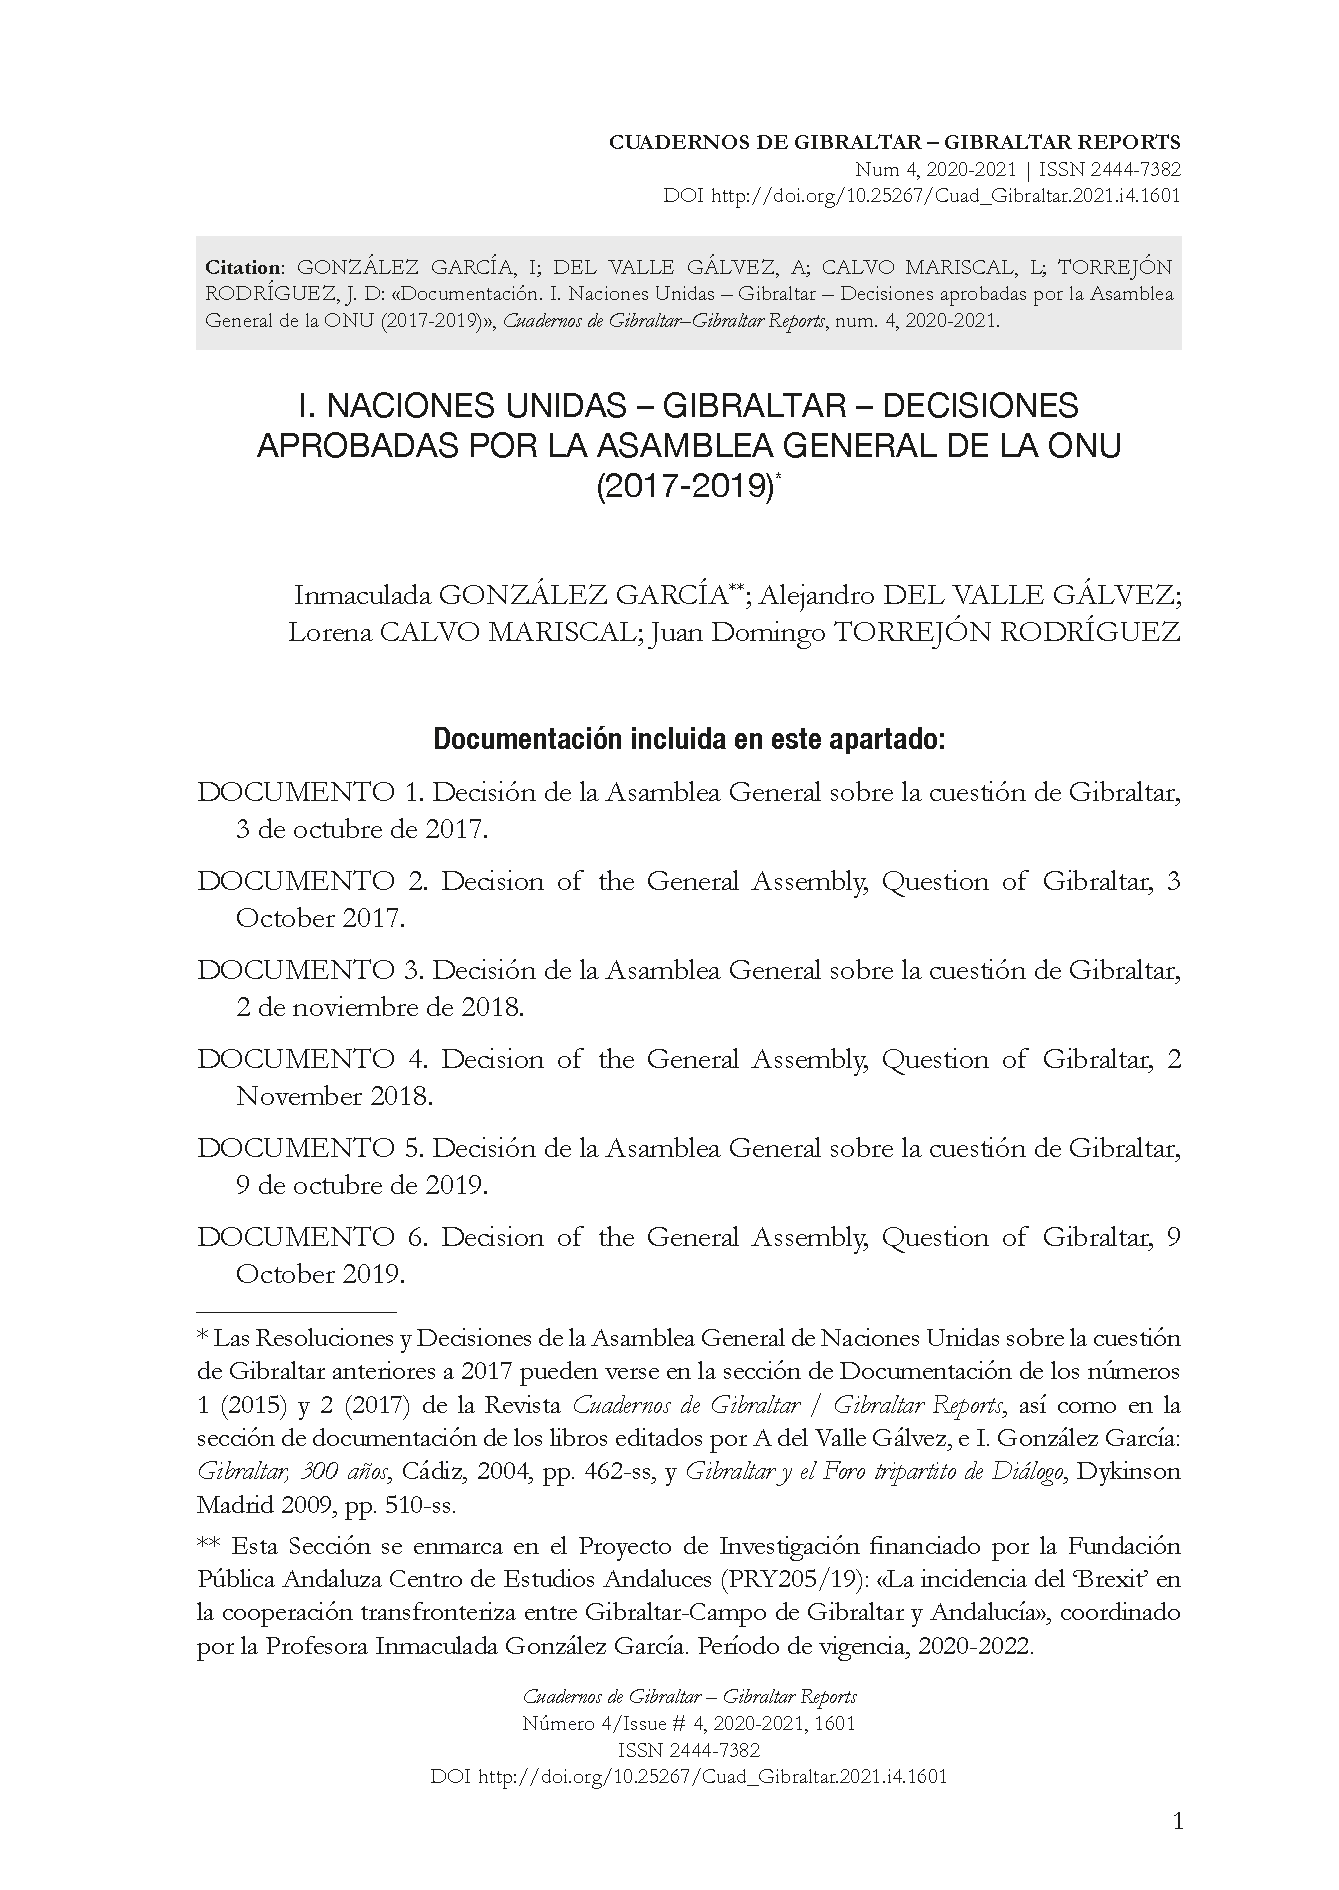 Documentación. I. Naciones Unidas – Gibraltar – Decisiones aprobadas por la Asamblea General de la ONU (2017-2019)